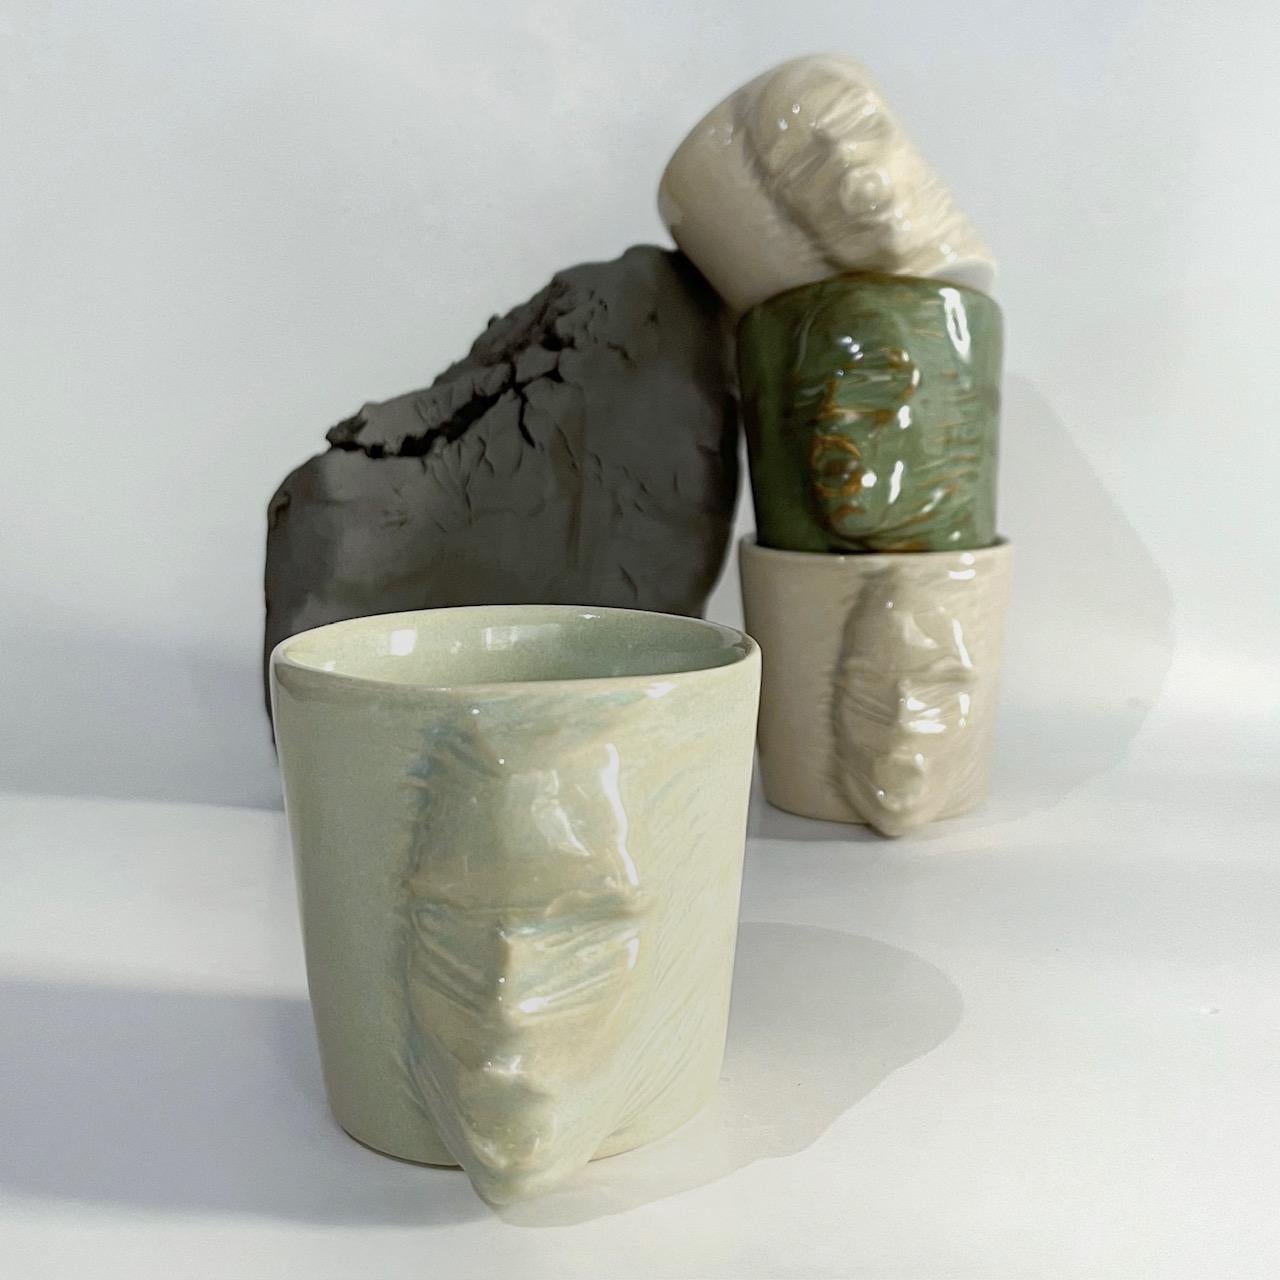 Un ensemble de 4 tasses sculpturales en céramique fabriquées à la main par l'artiste céramiste Hulya Sozer. 
Glaçage alimentaire.
Lavable au lave-vaisselle.

Hauteur : 7cm / Profondeur : 9cm / Diamètre : 7cm
Volume : 120ml
Le set comprend 4 tasses